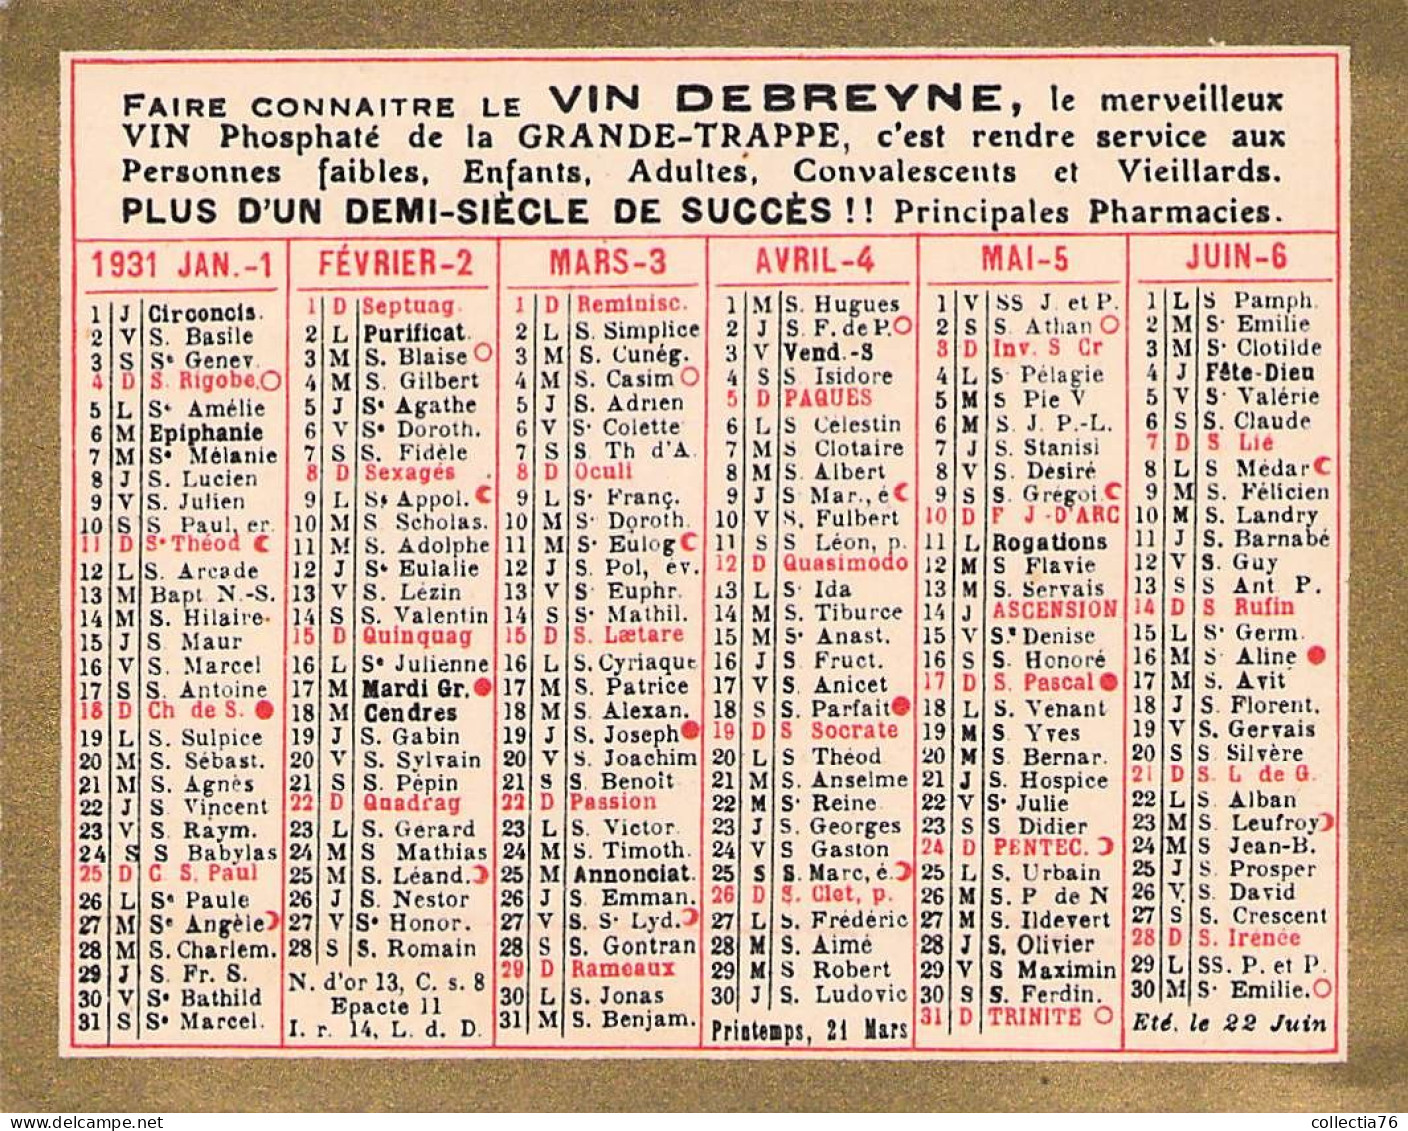 VIEUX PAPIERS CALENDRIER PETIT FORMAT 1931 TISANE DEBREYNE GRANDE TRAPPE 7 X 9 CM - Petit Format : 1921-40